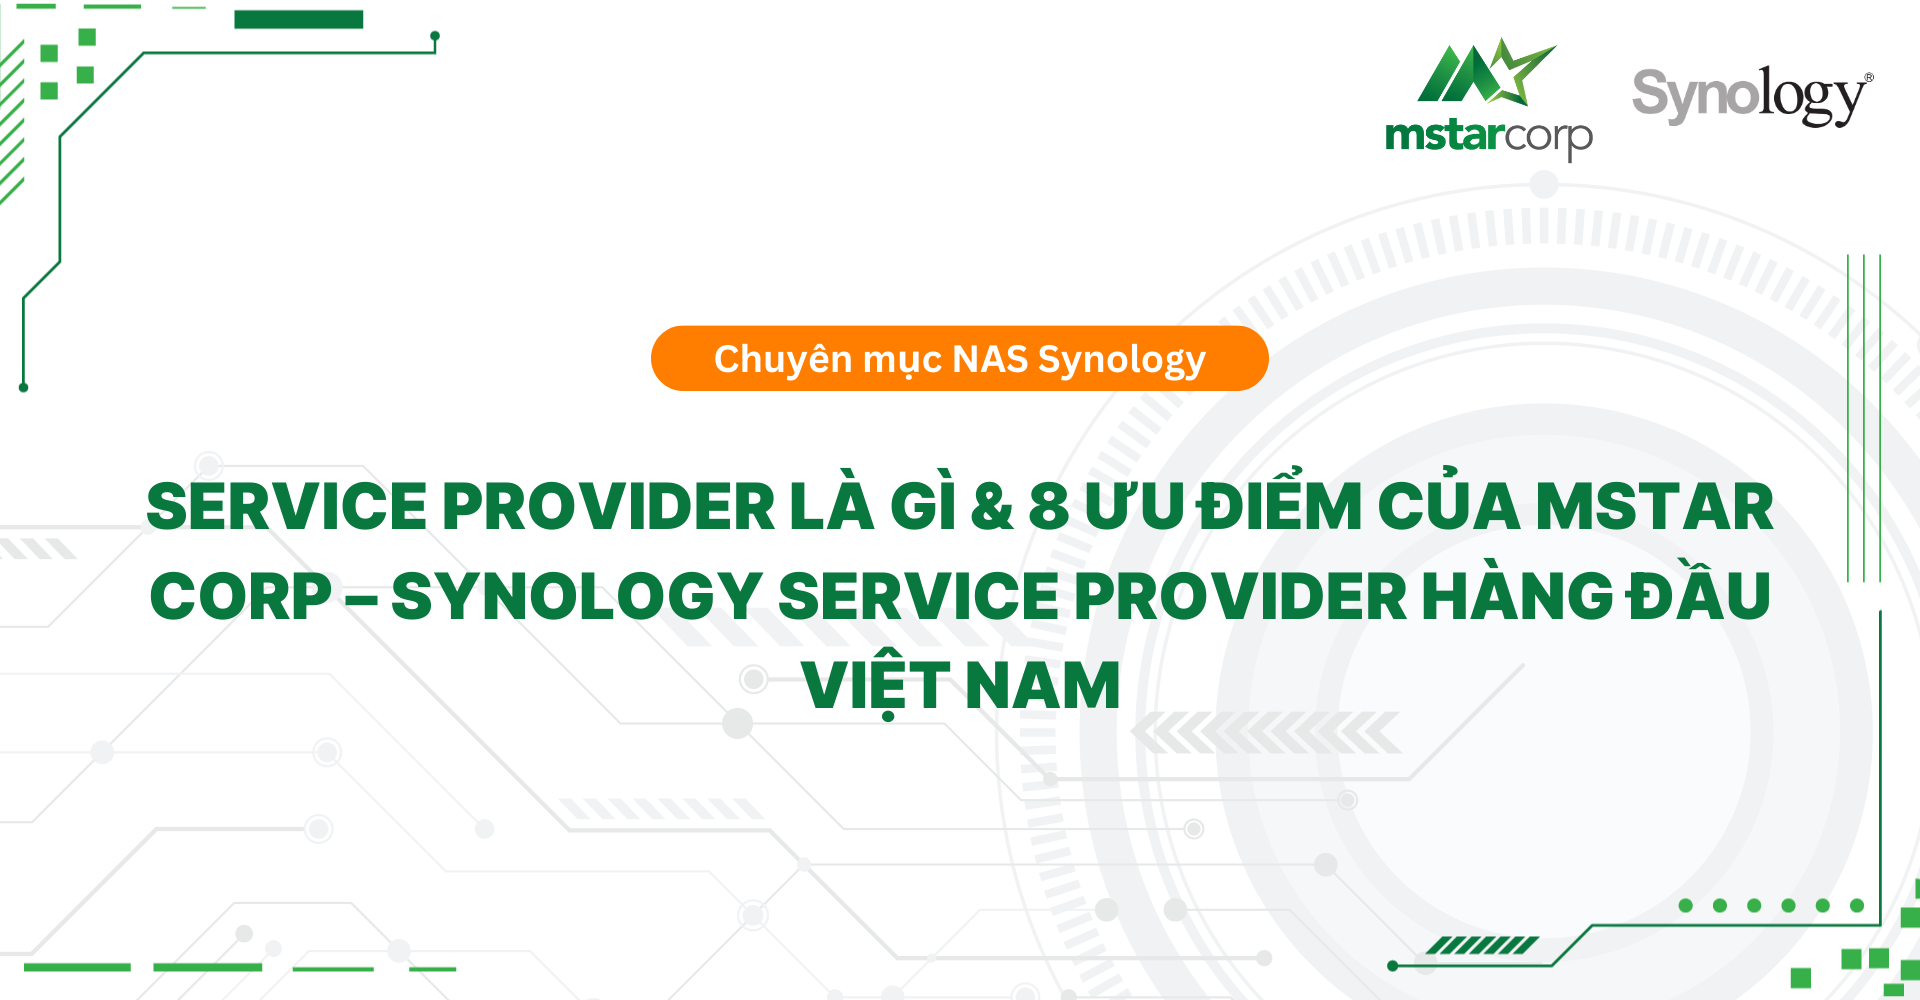 Service Provider là gì & 8 ưu điểm của Mstar Corp – Synology Service Provider hàng đầu Việt Nam